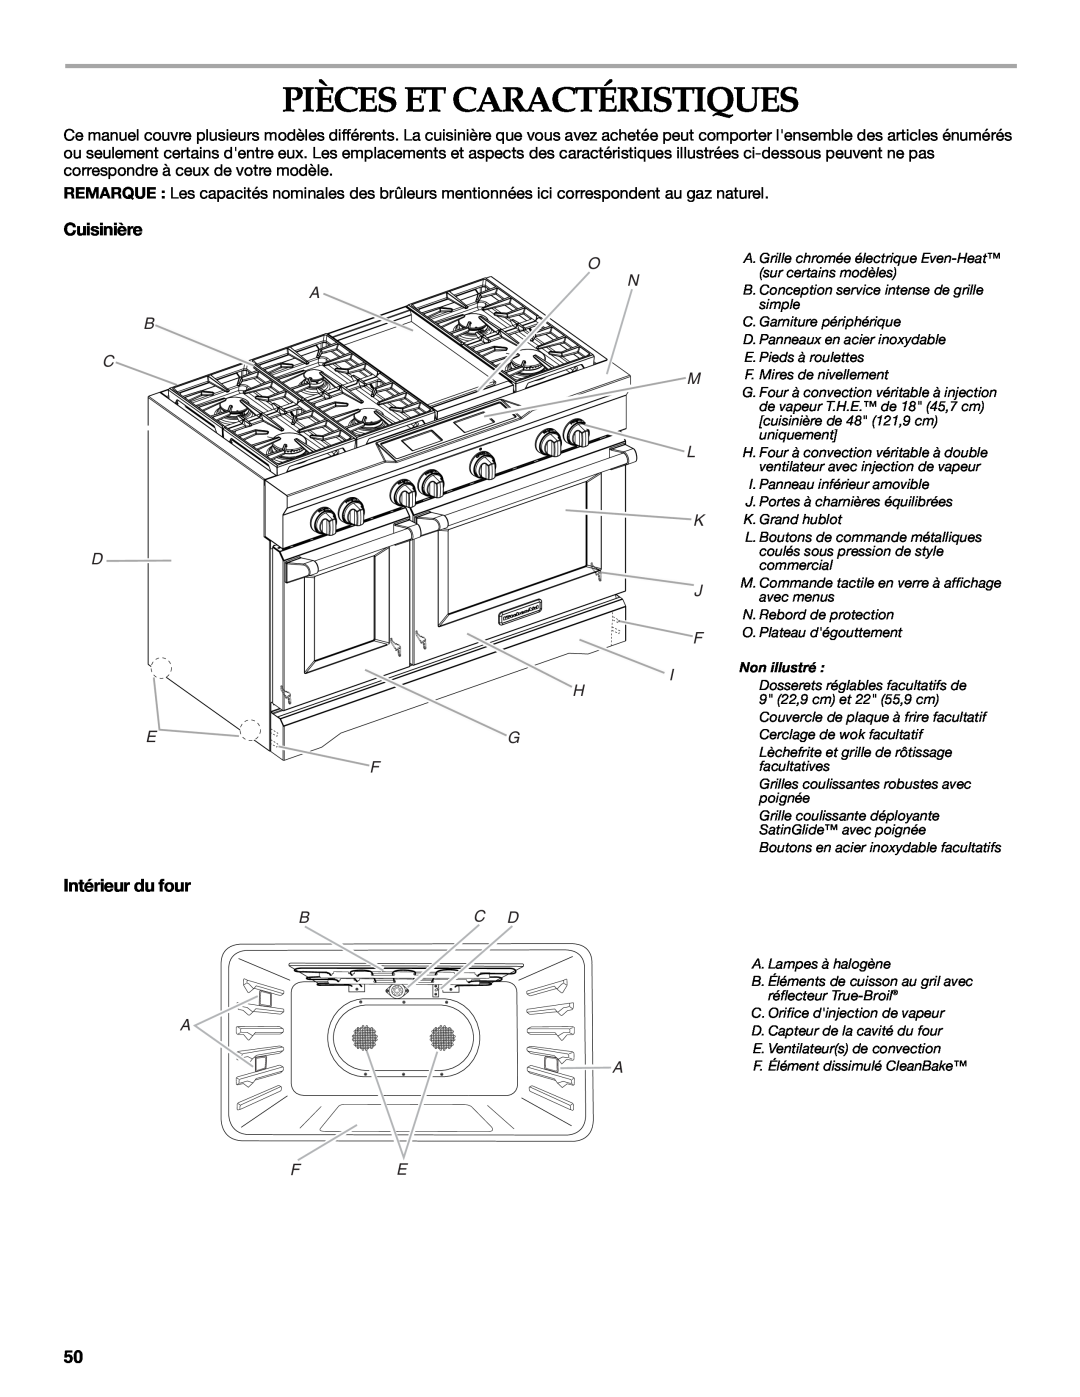 KitchenAid KDRU763.KDRU manual Pièces Et Caractéristiques, Cuisinière, Intérieur du four, Bc D A 